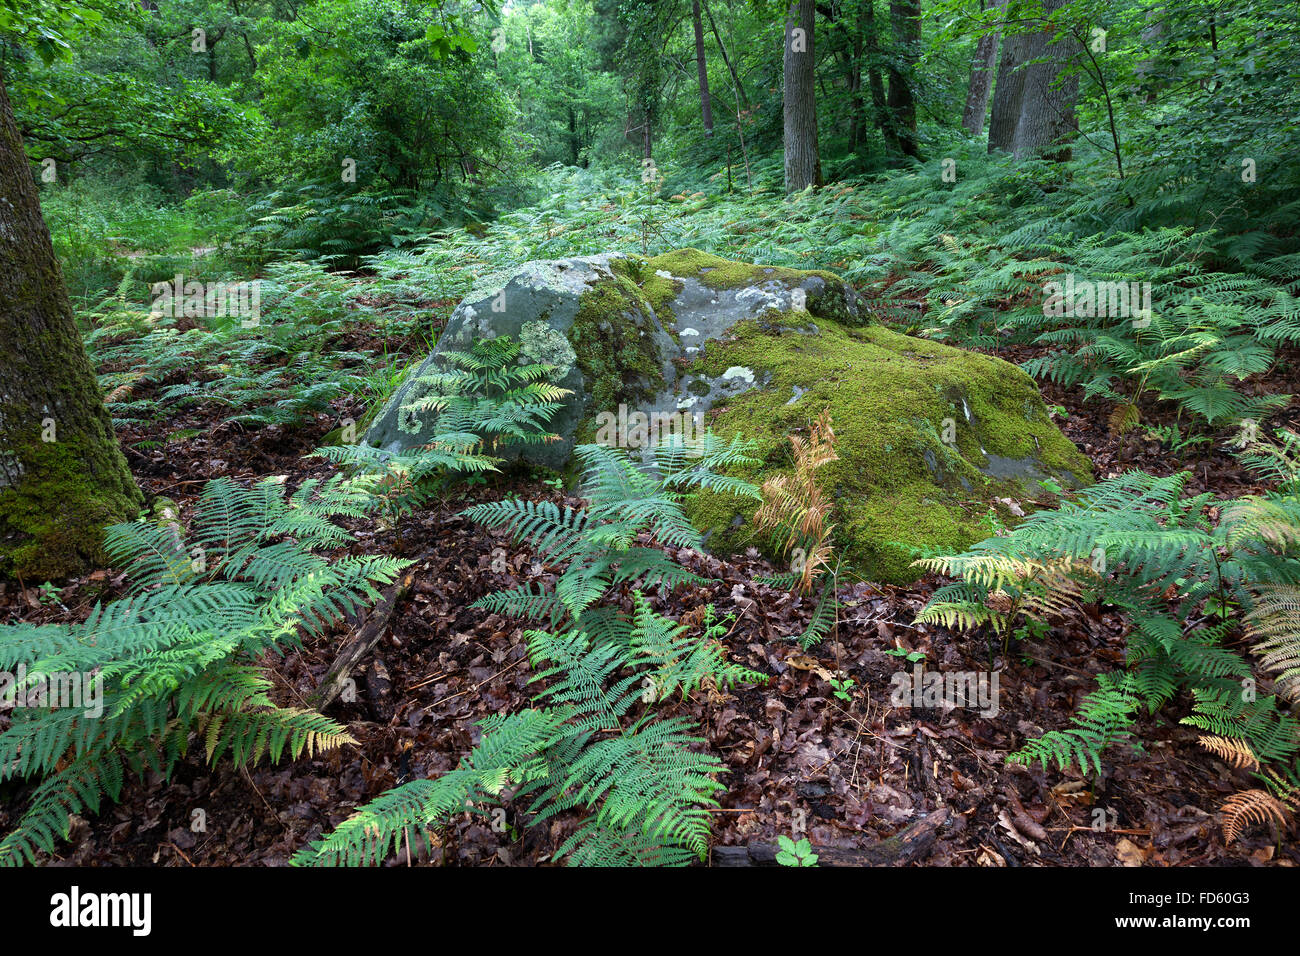 Fougères et un rocher avec de la mousse dans le bois Banque D'Images